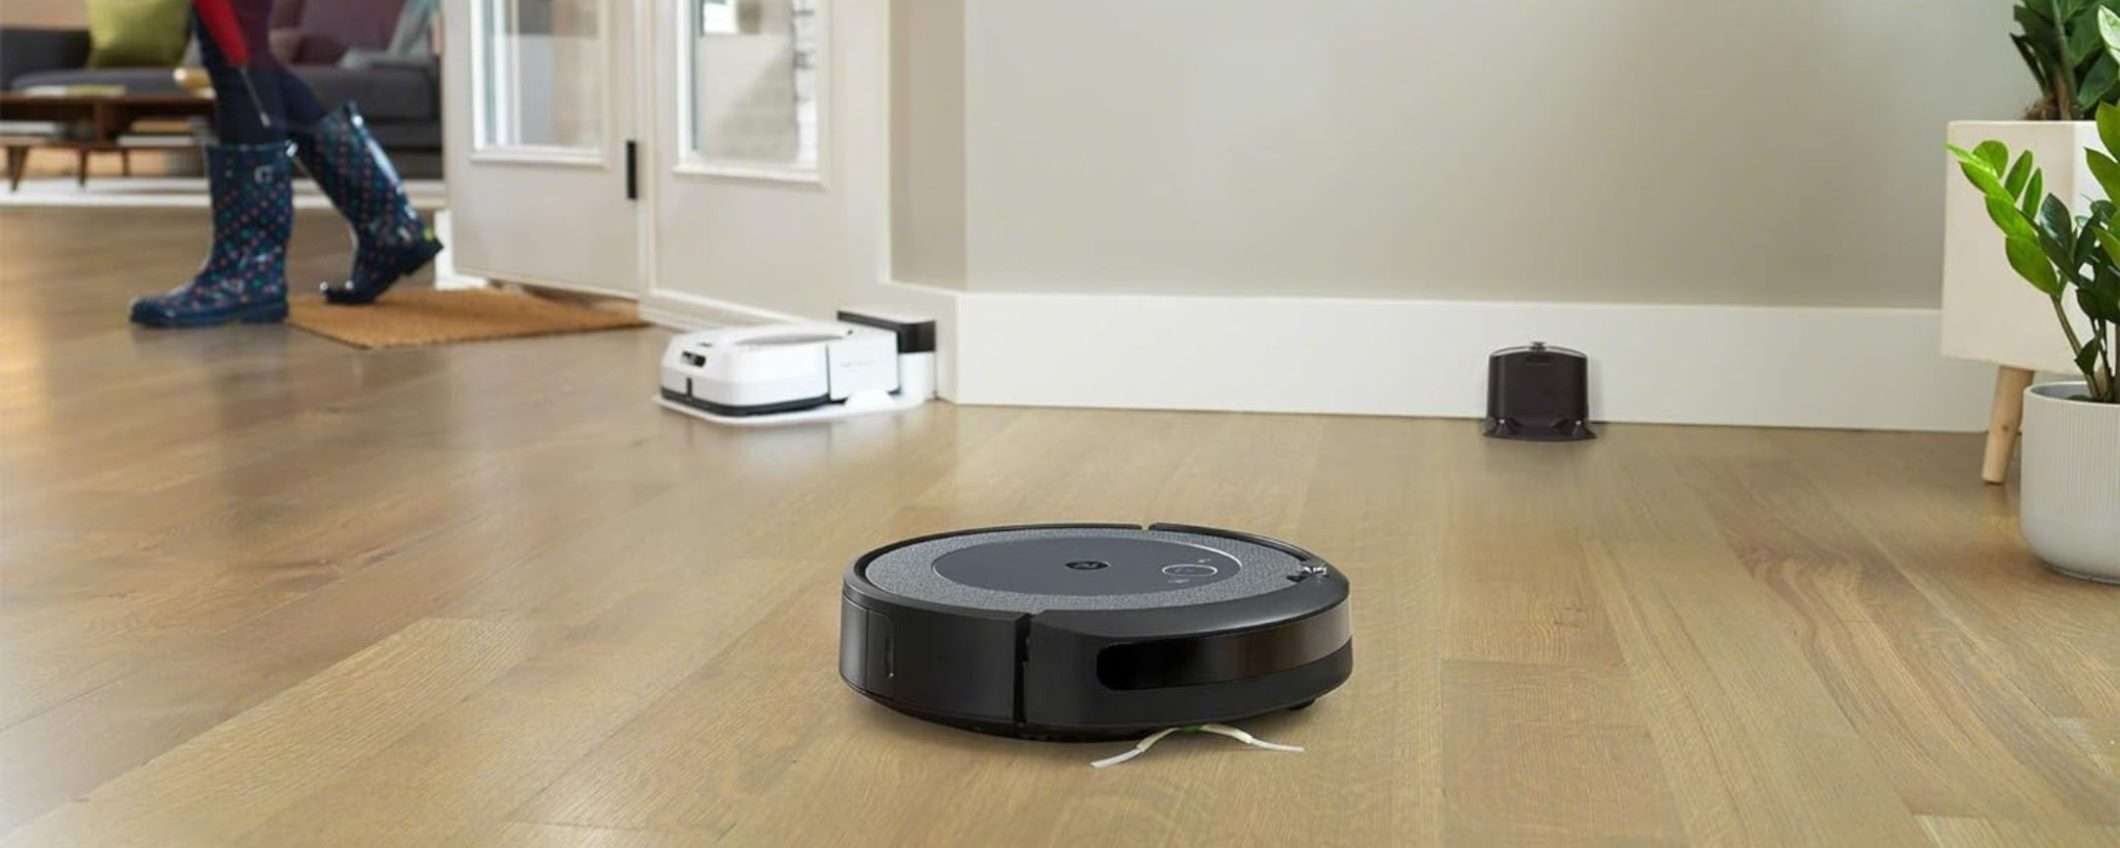 iRobot Roomba I3152 è il robot aspirapolvere dei TUOI SOGNI: fa tutto a 299€